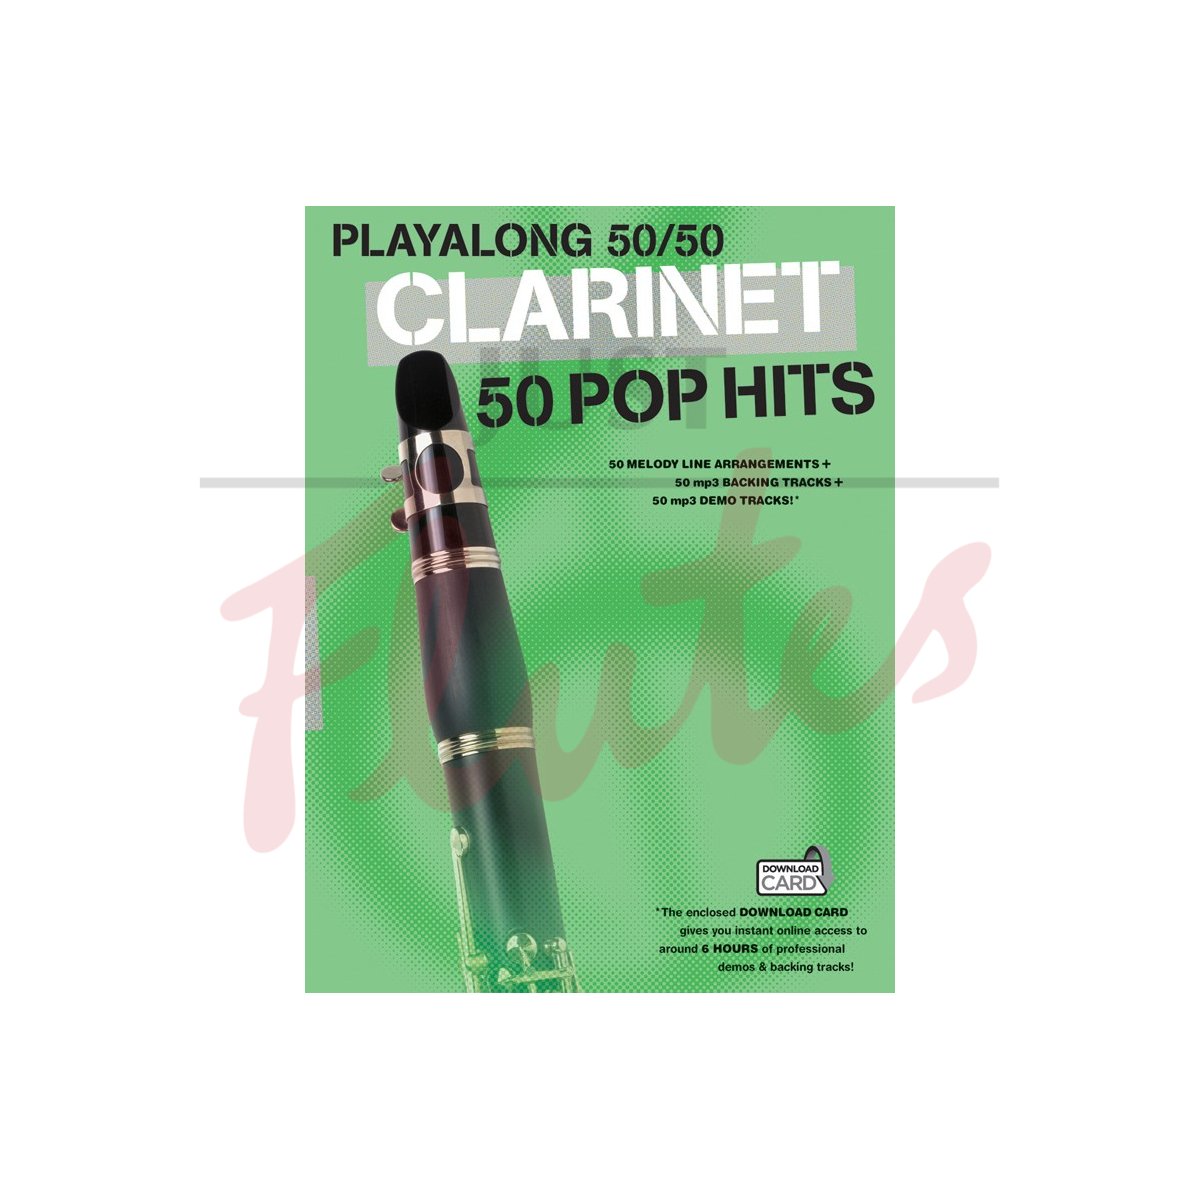 Playalong 50/50 Clarinet: 50 Pop Hits